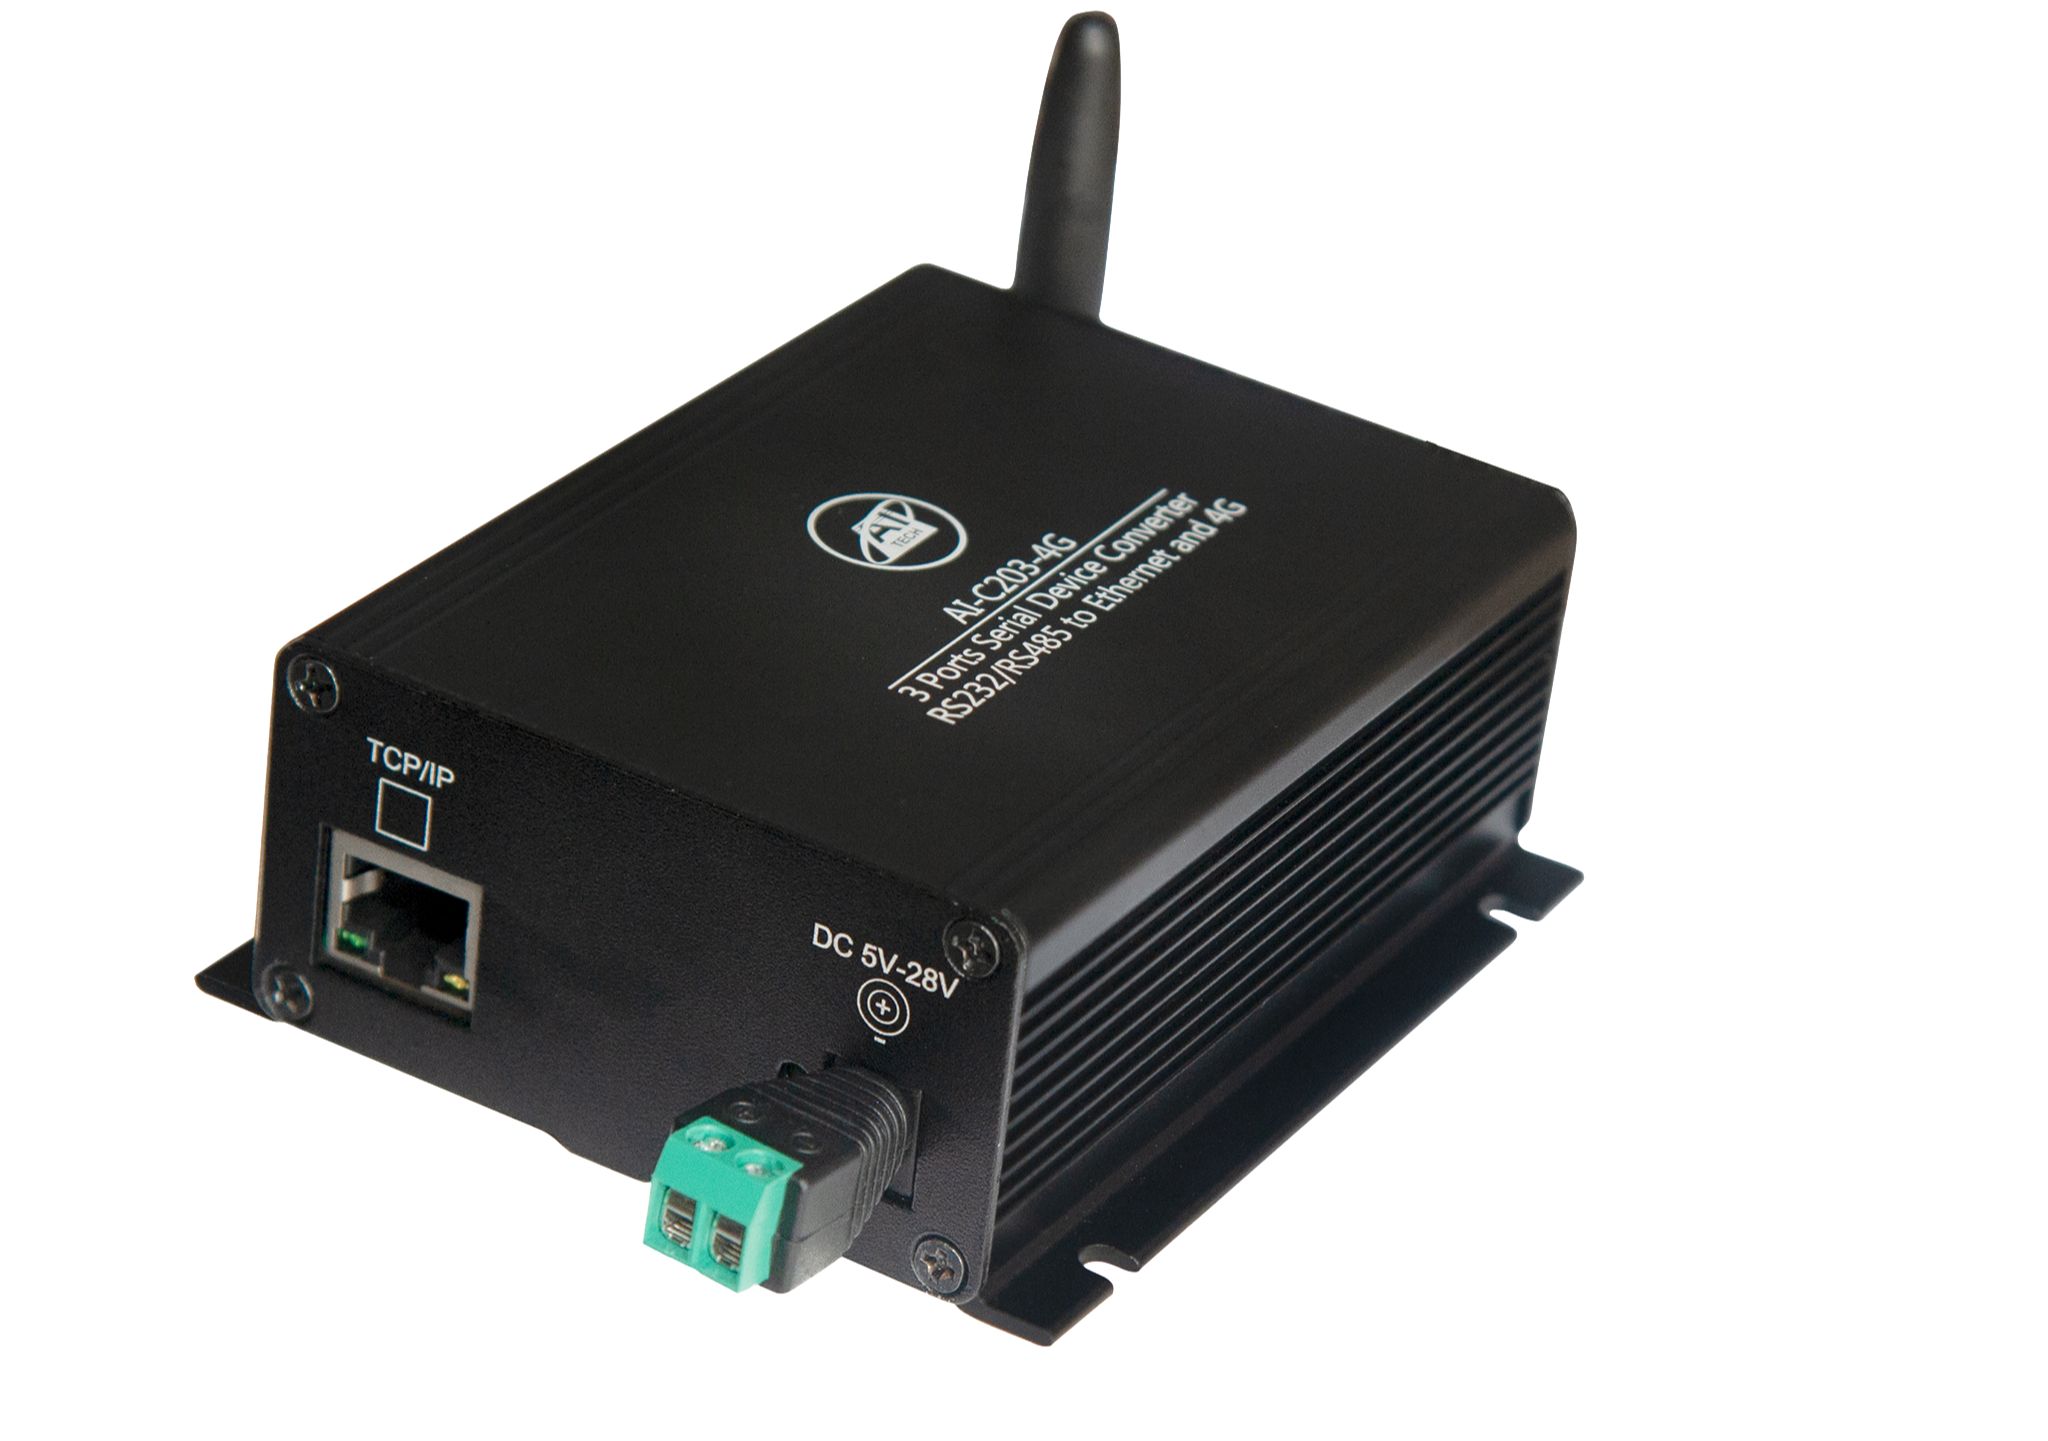 Bộ chuyển đổi tín hiệu RS232 RS485 sang Ethernet DÙNG SÓNG 4G - Hàng Chính hãng AITECH